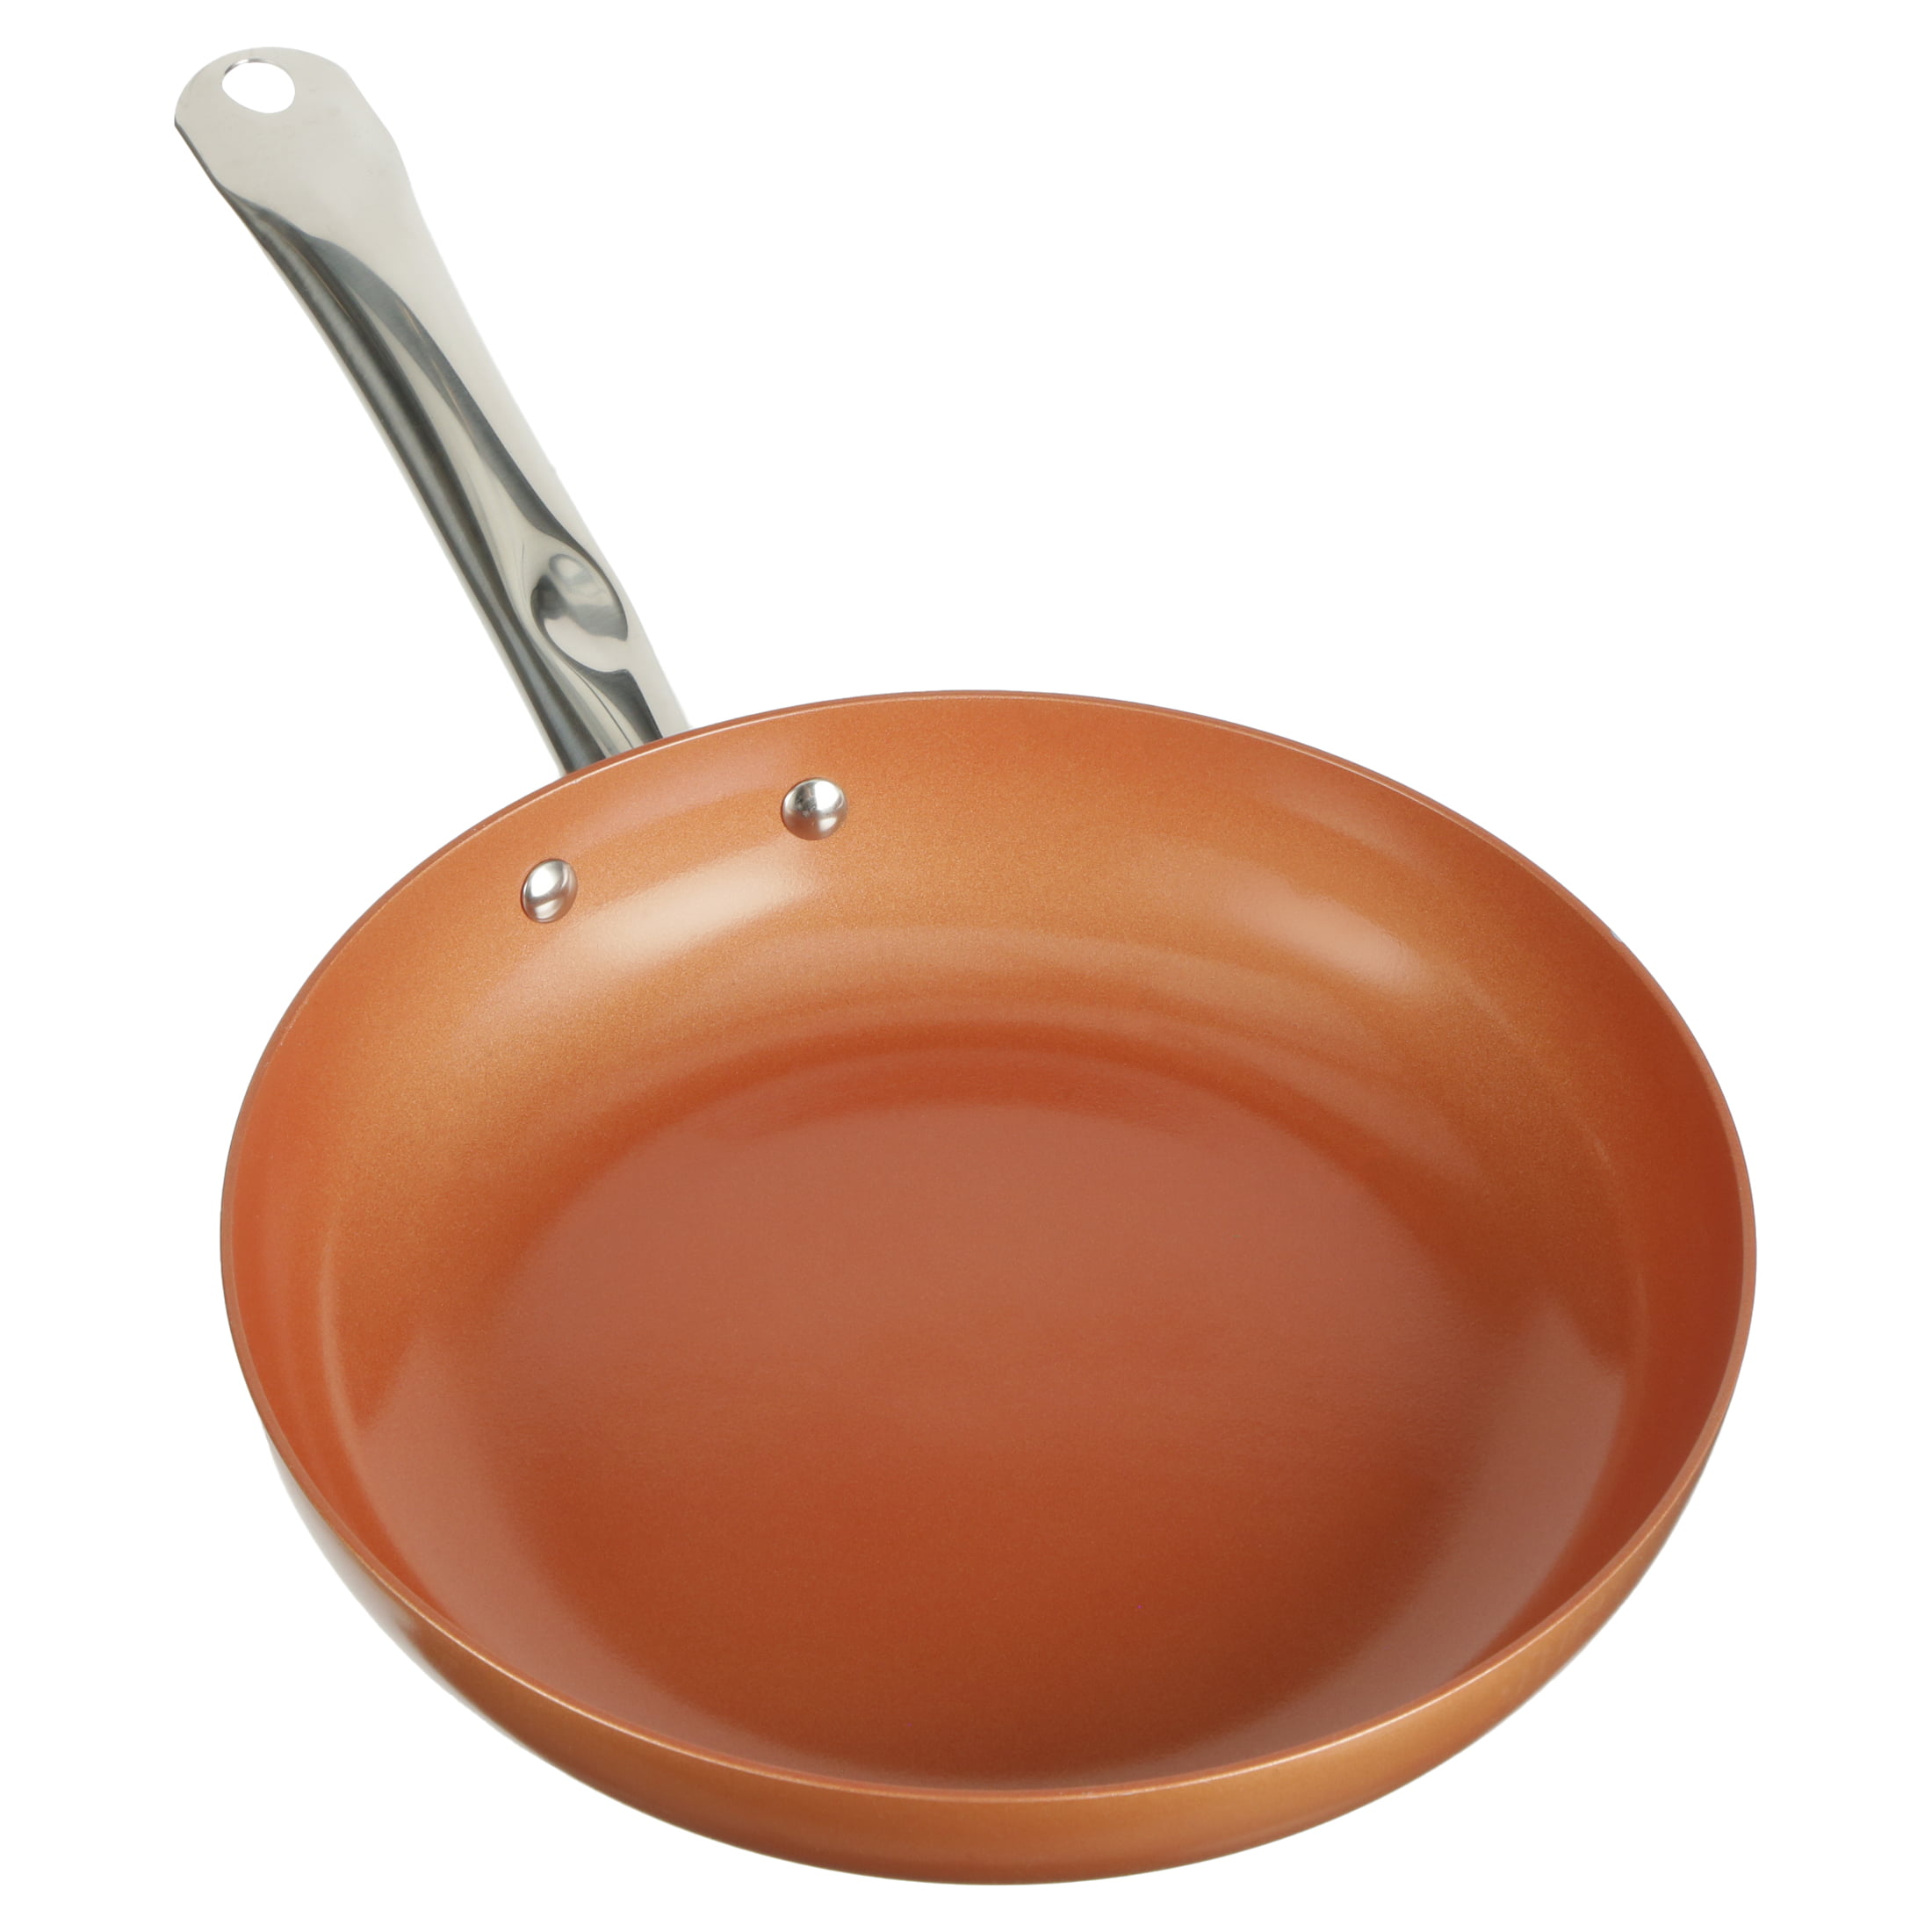 MasterPan Copper tone 10-inch Ceramic Non-stick Fry pan